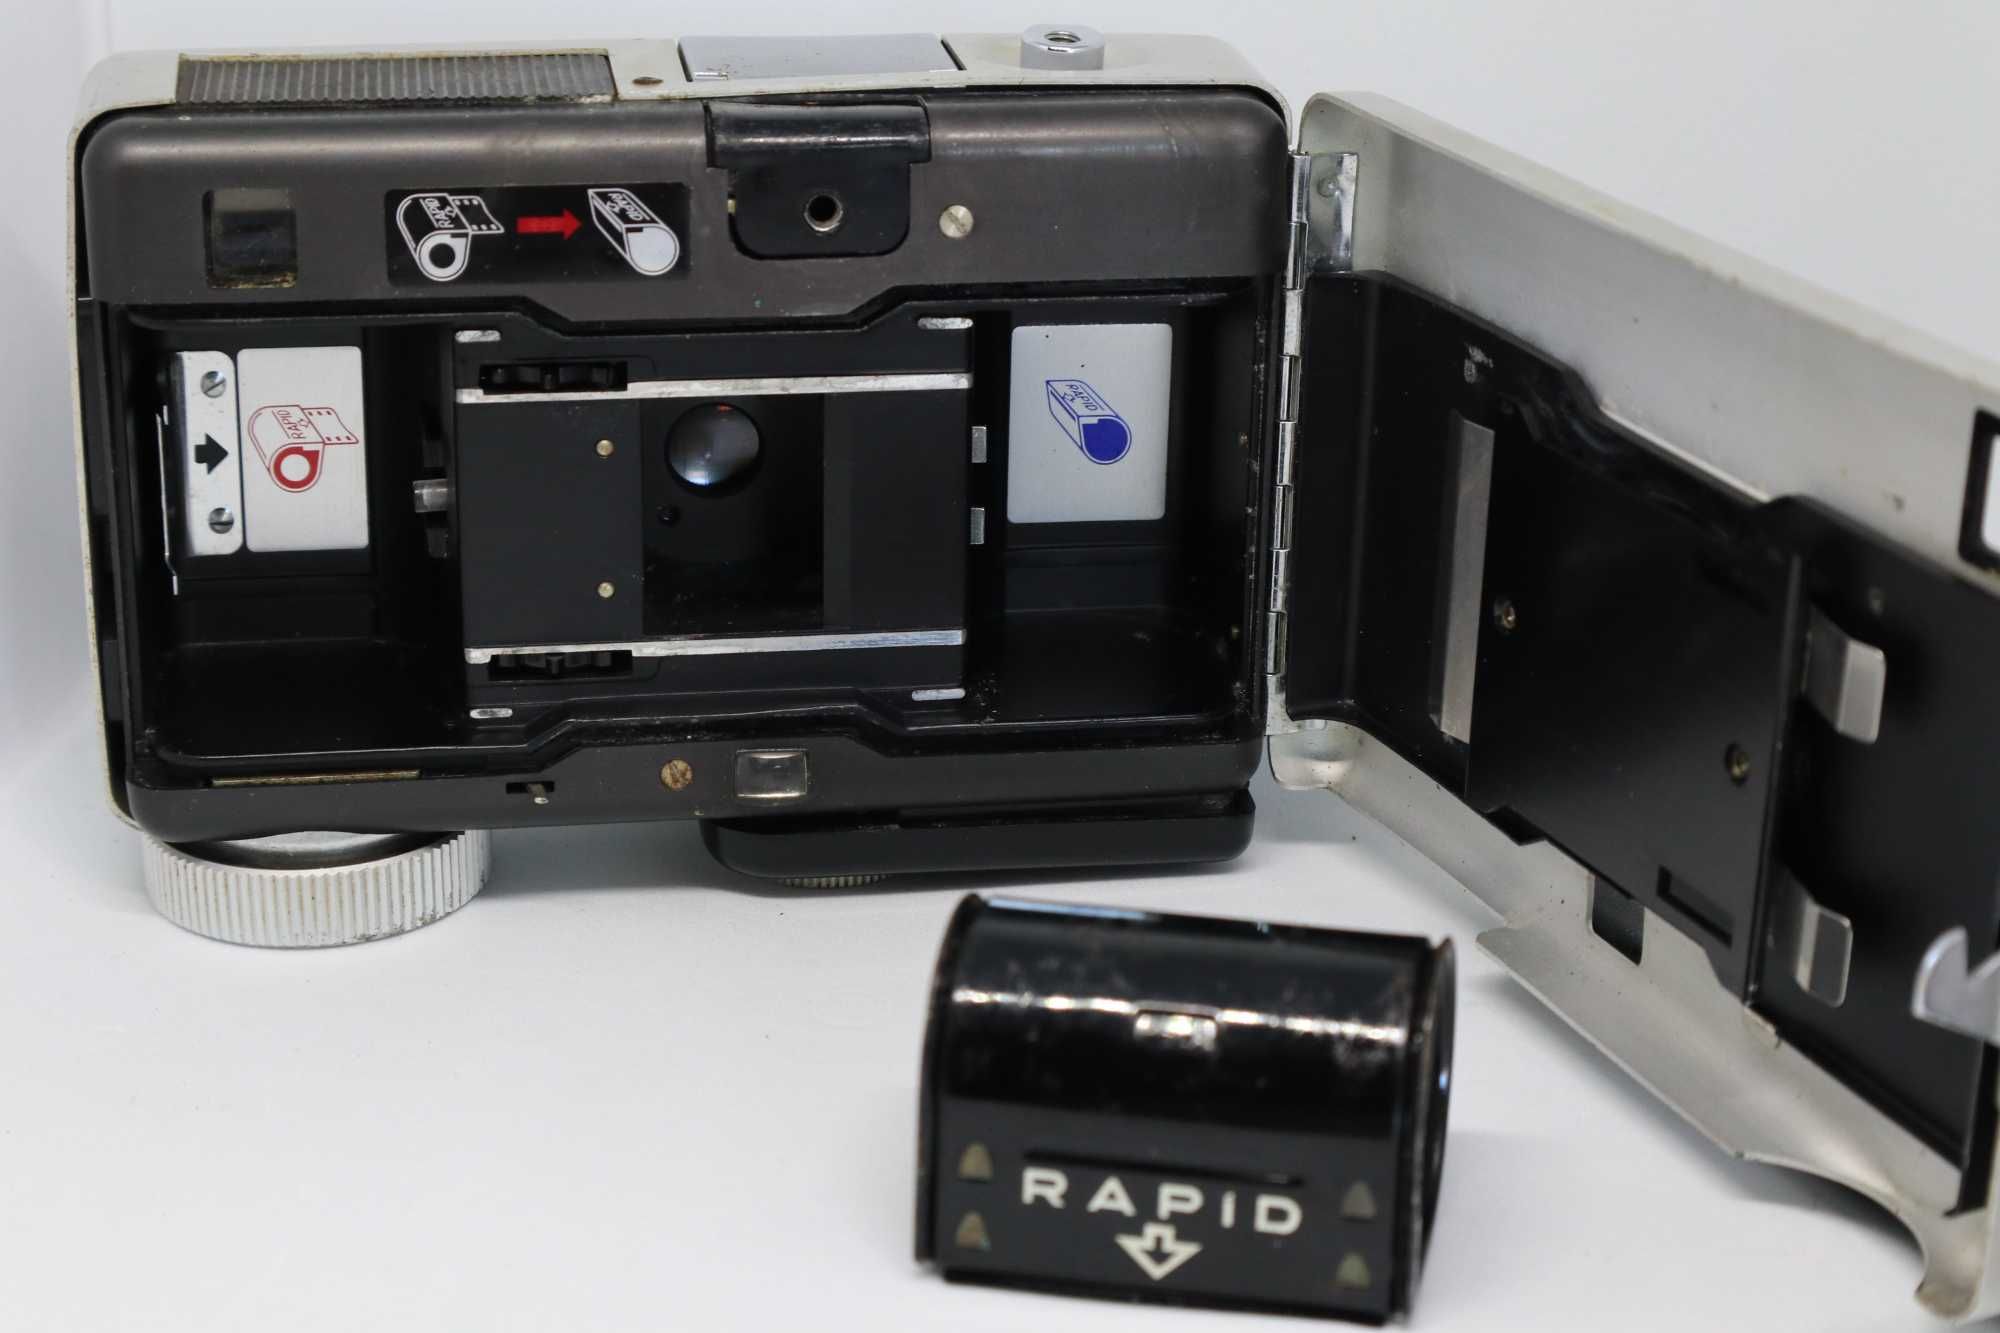 PROMO: Câmara vintage de colecção - Canon Dial Rapid